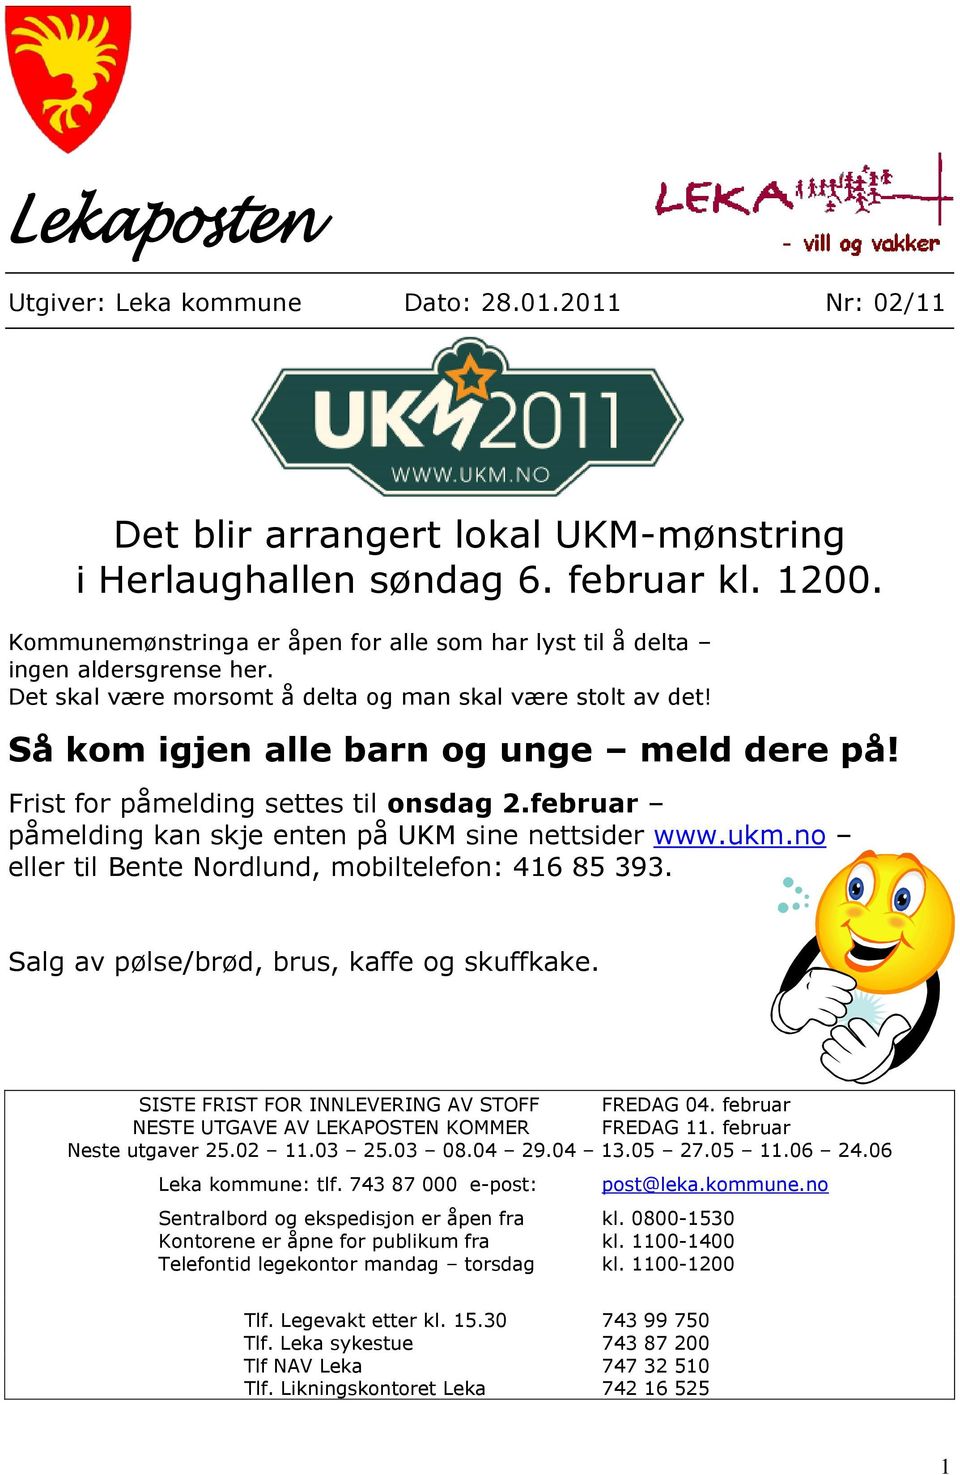 Frist for påmelding settes til onsdag 2.februar påmelding kan skje enten på UKM sine nettsider www.ukm.no eller til Bente Nordlund, mobiltelefon: 416 85 393.